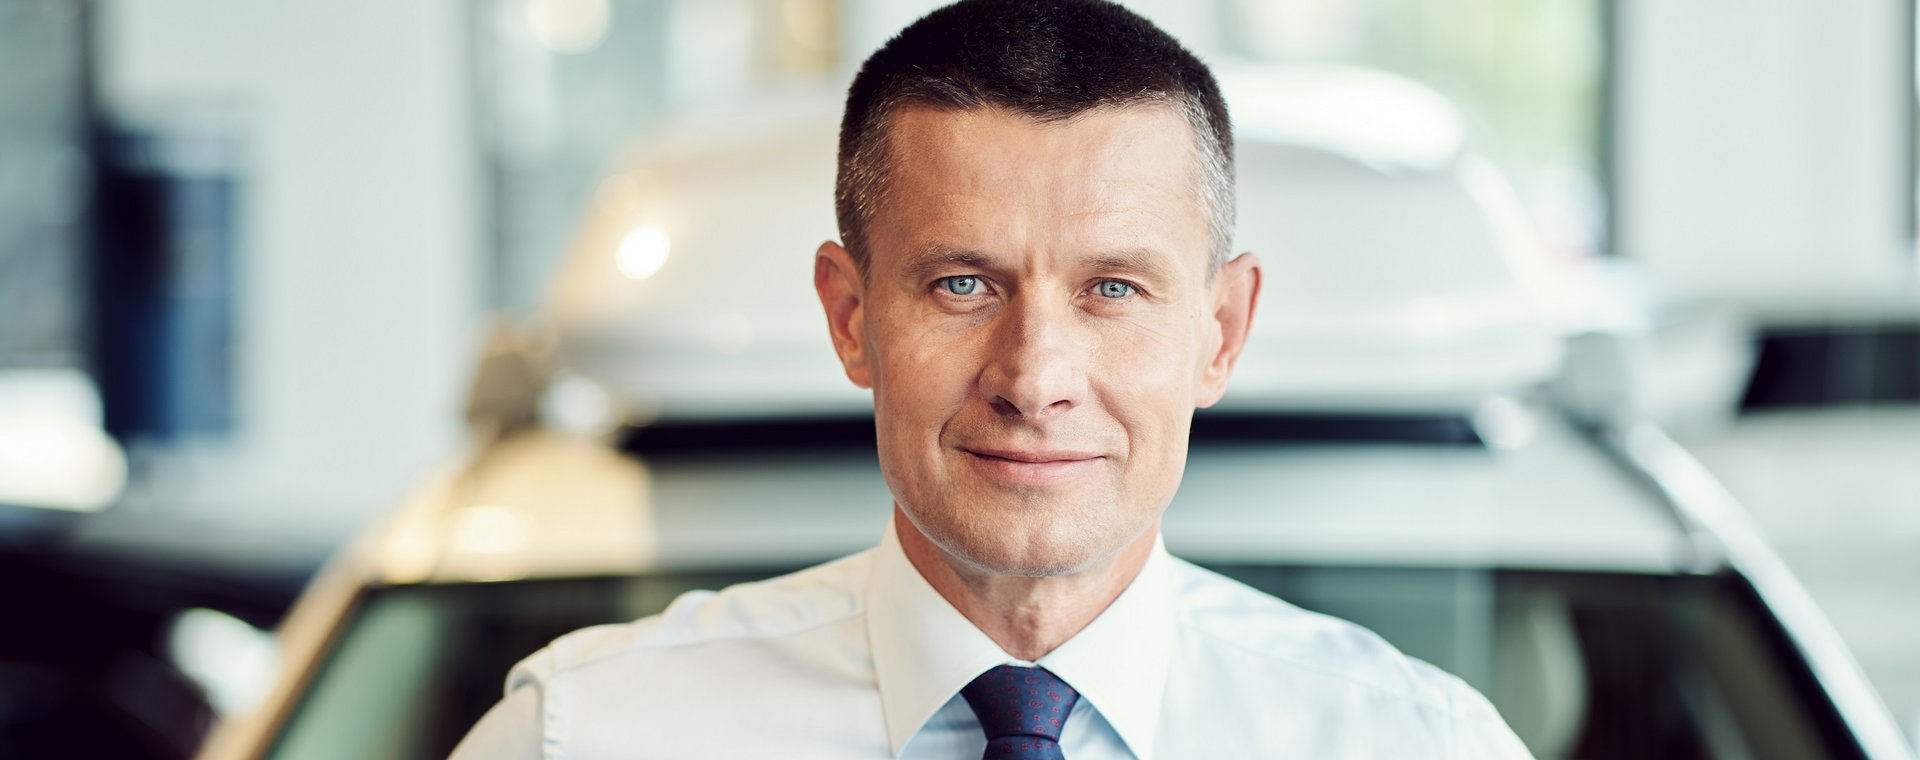 Arkadiusz Nowiński właśnie został głównym liderem regionu EMEA w Volvo Cars. Nam opowiedział, jaka przyszłość czeka motoryzację i jak to jest odpowiadać za kluczowe rynki dla globalnej firmy motoryzacyjnej. 